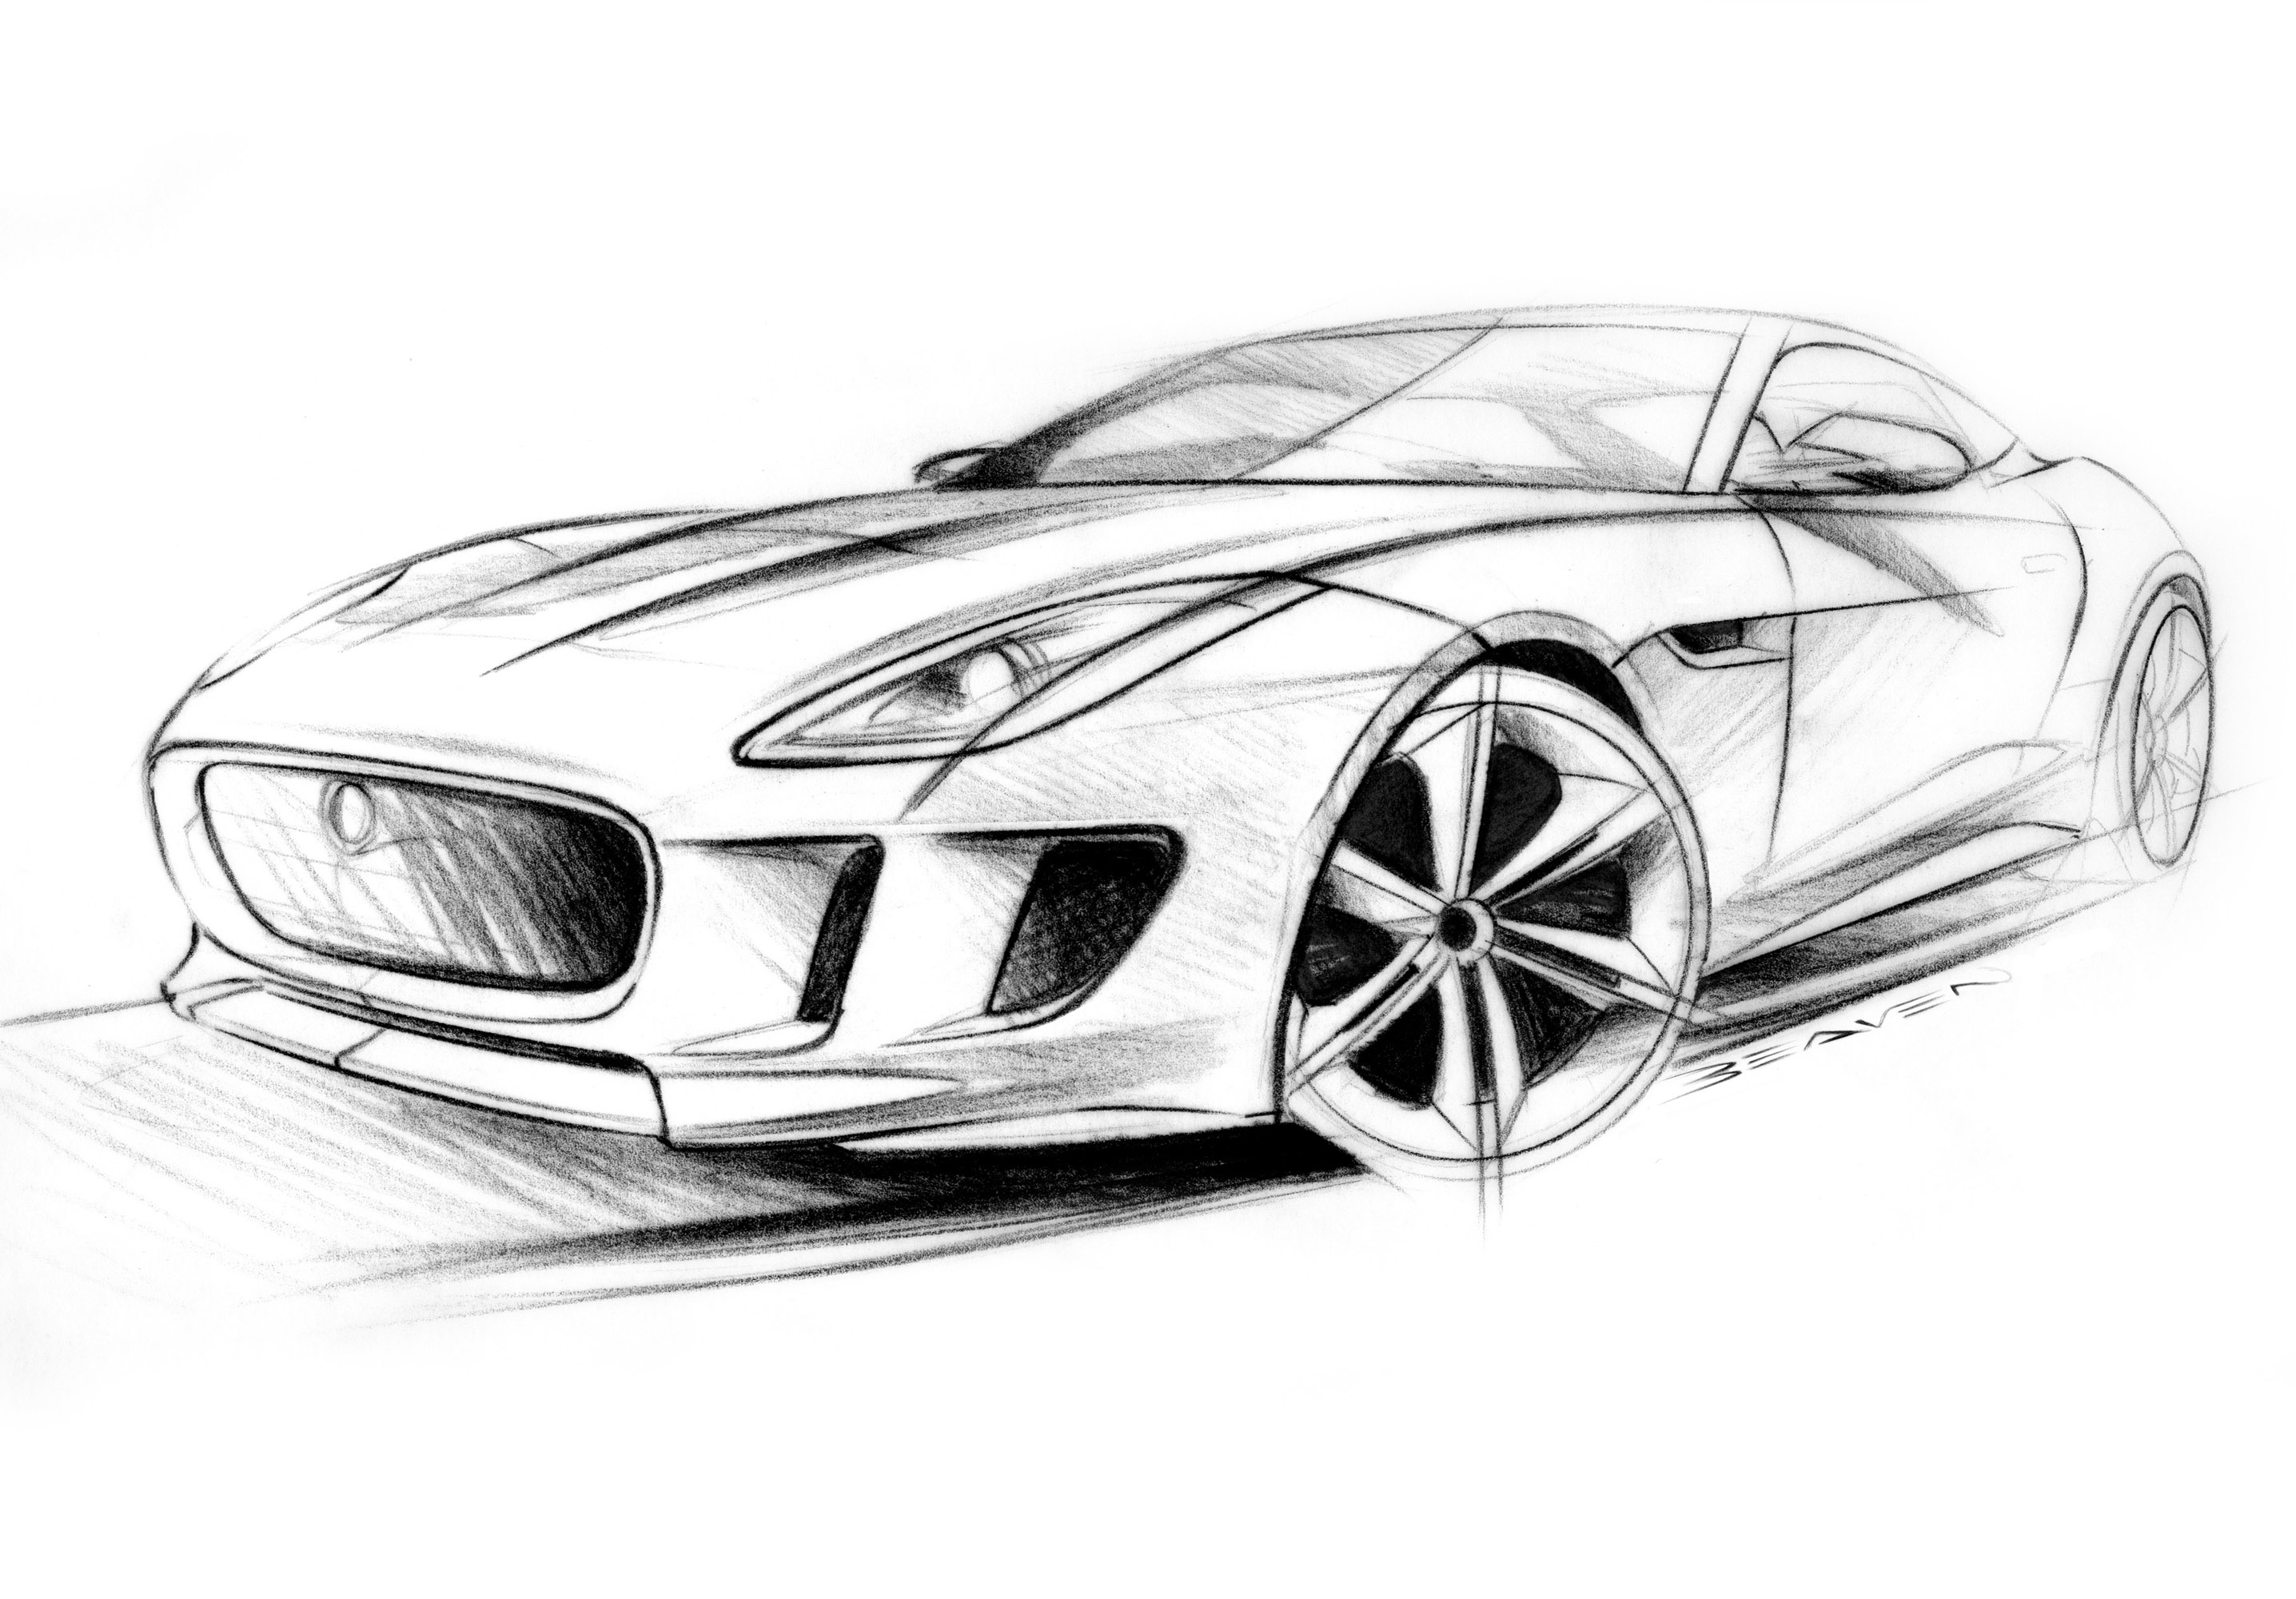 2011, Jaguar, C x16, Concept, Supercar, Supercars, Drawing, Sketch, Pencil, Art Wallpaper